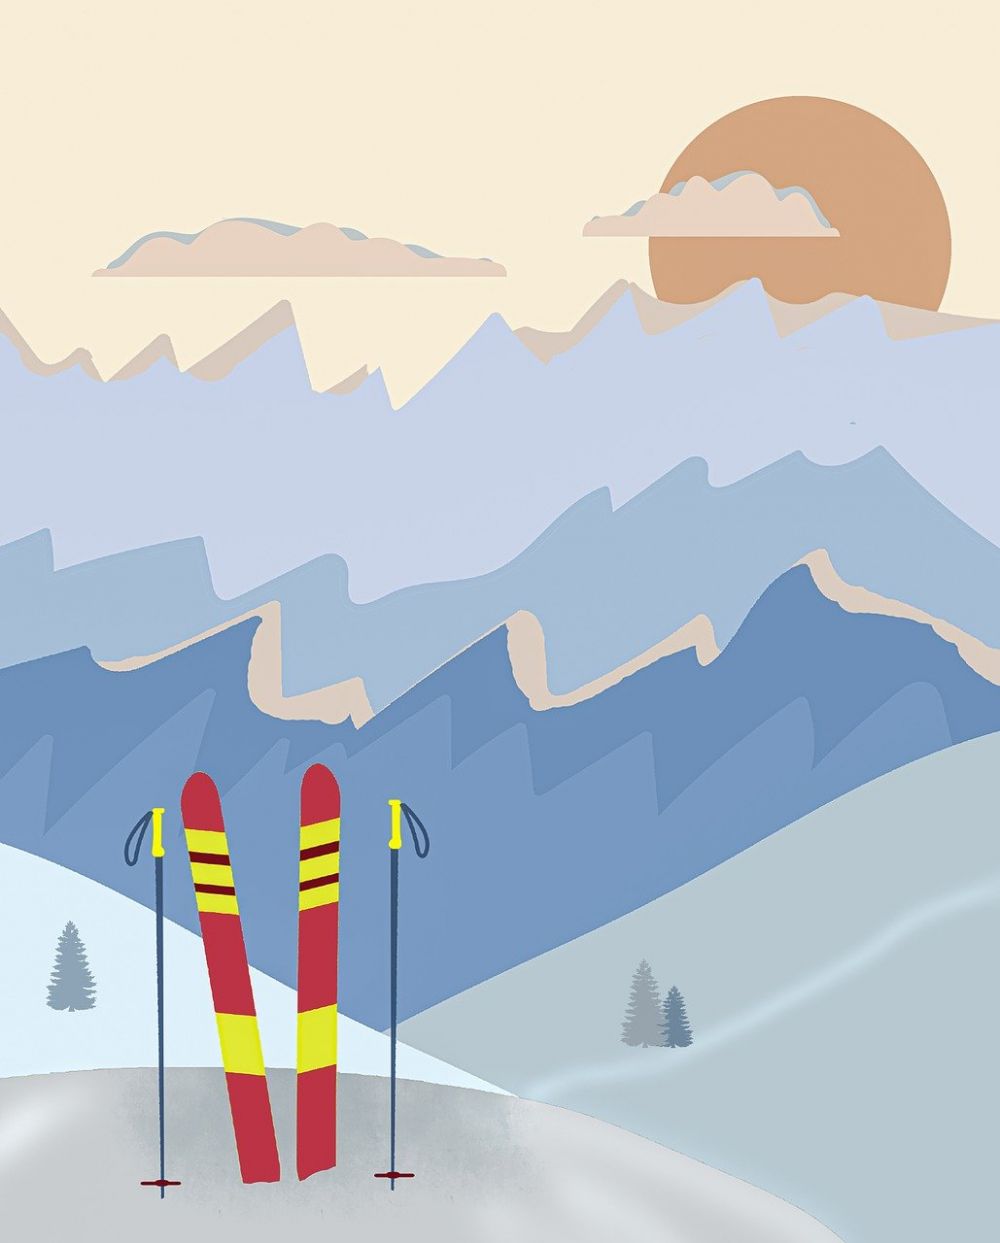 Köldskador på skidor: En grundlig översikt